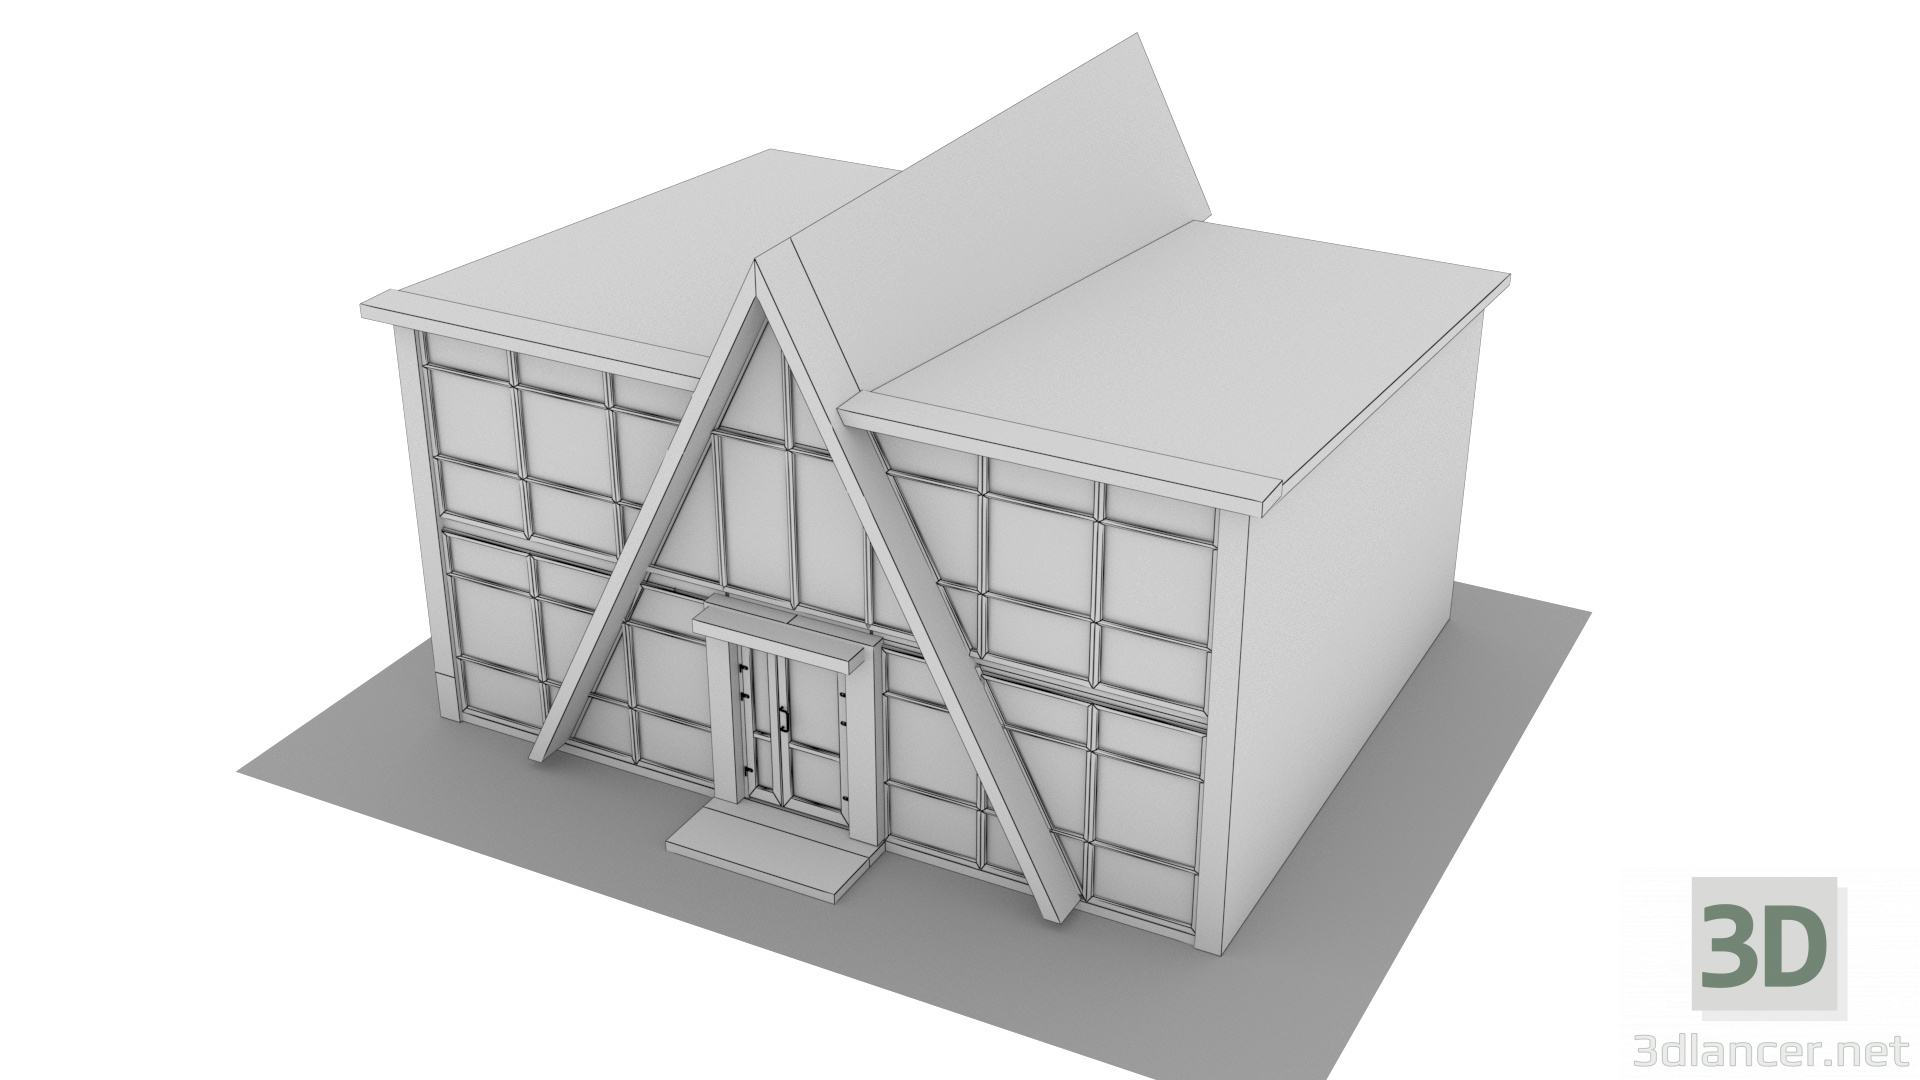 Pabellón de comercio "Yugra" 3D modelo Compro - render